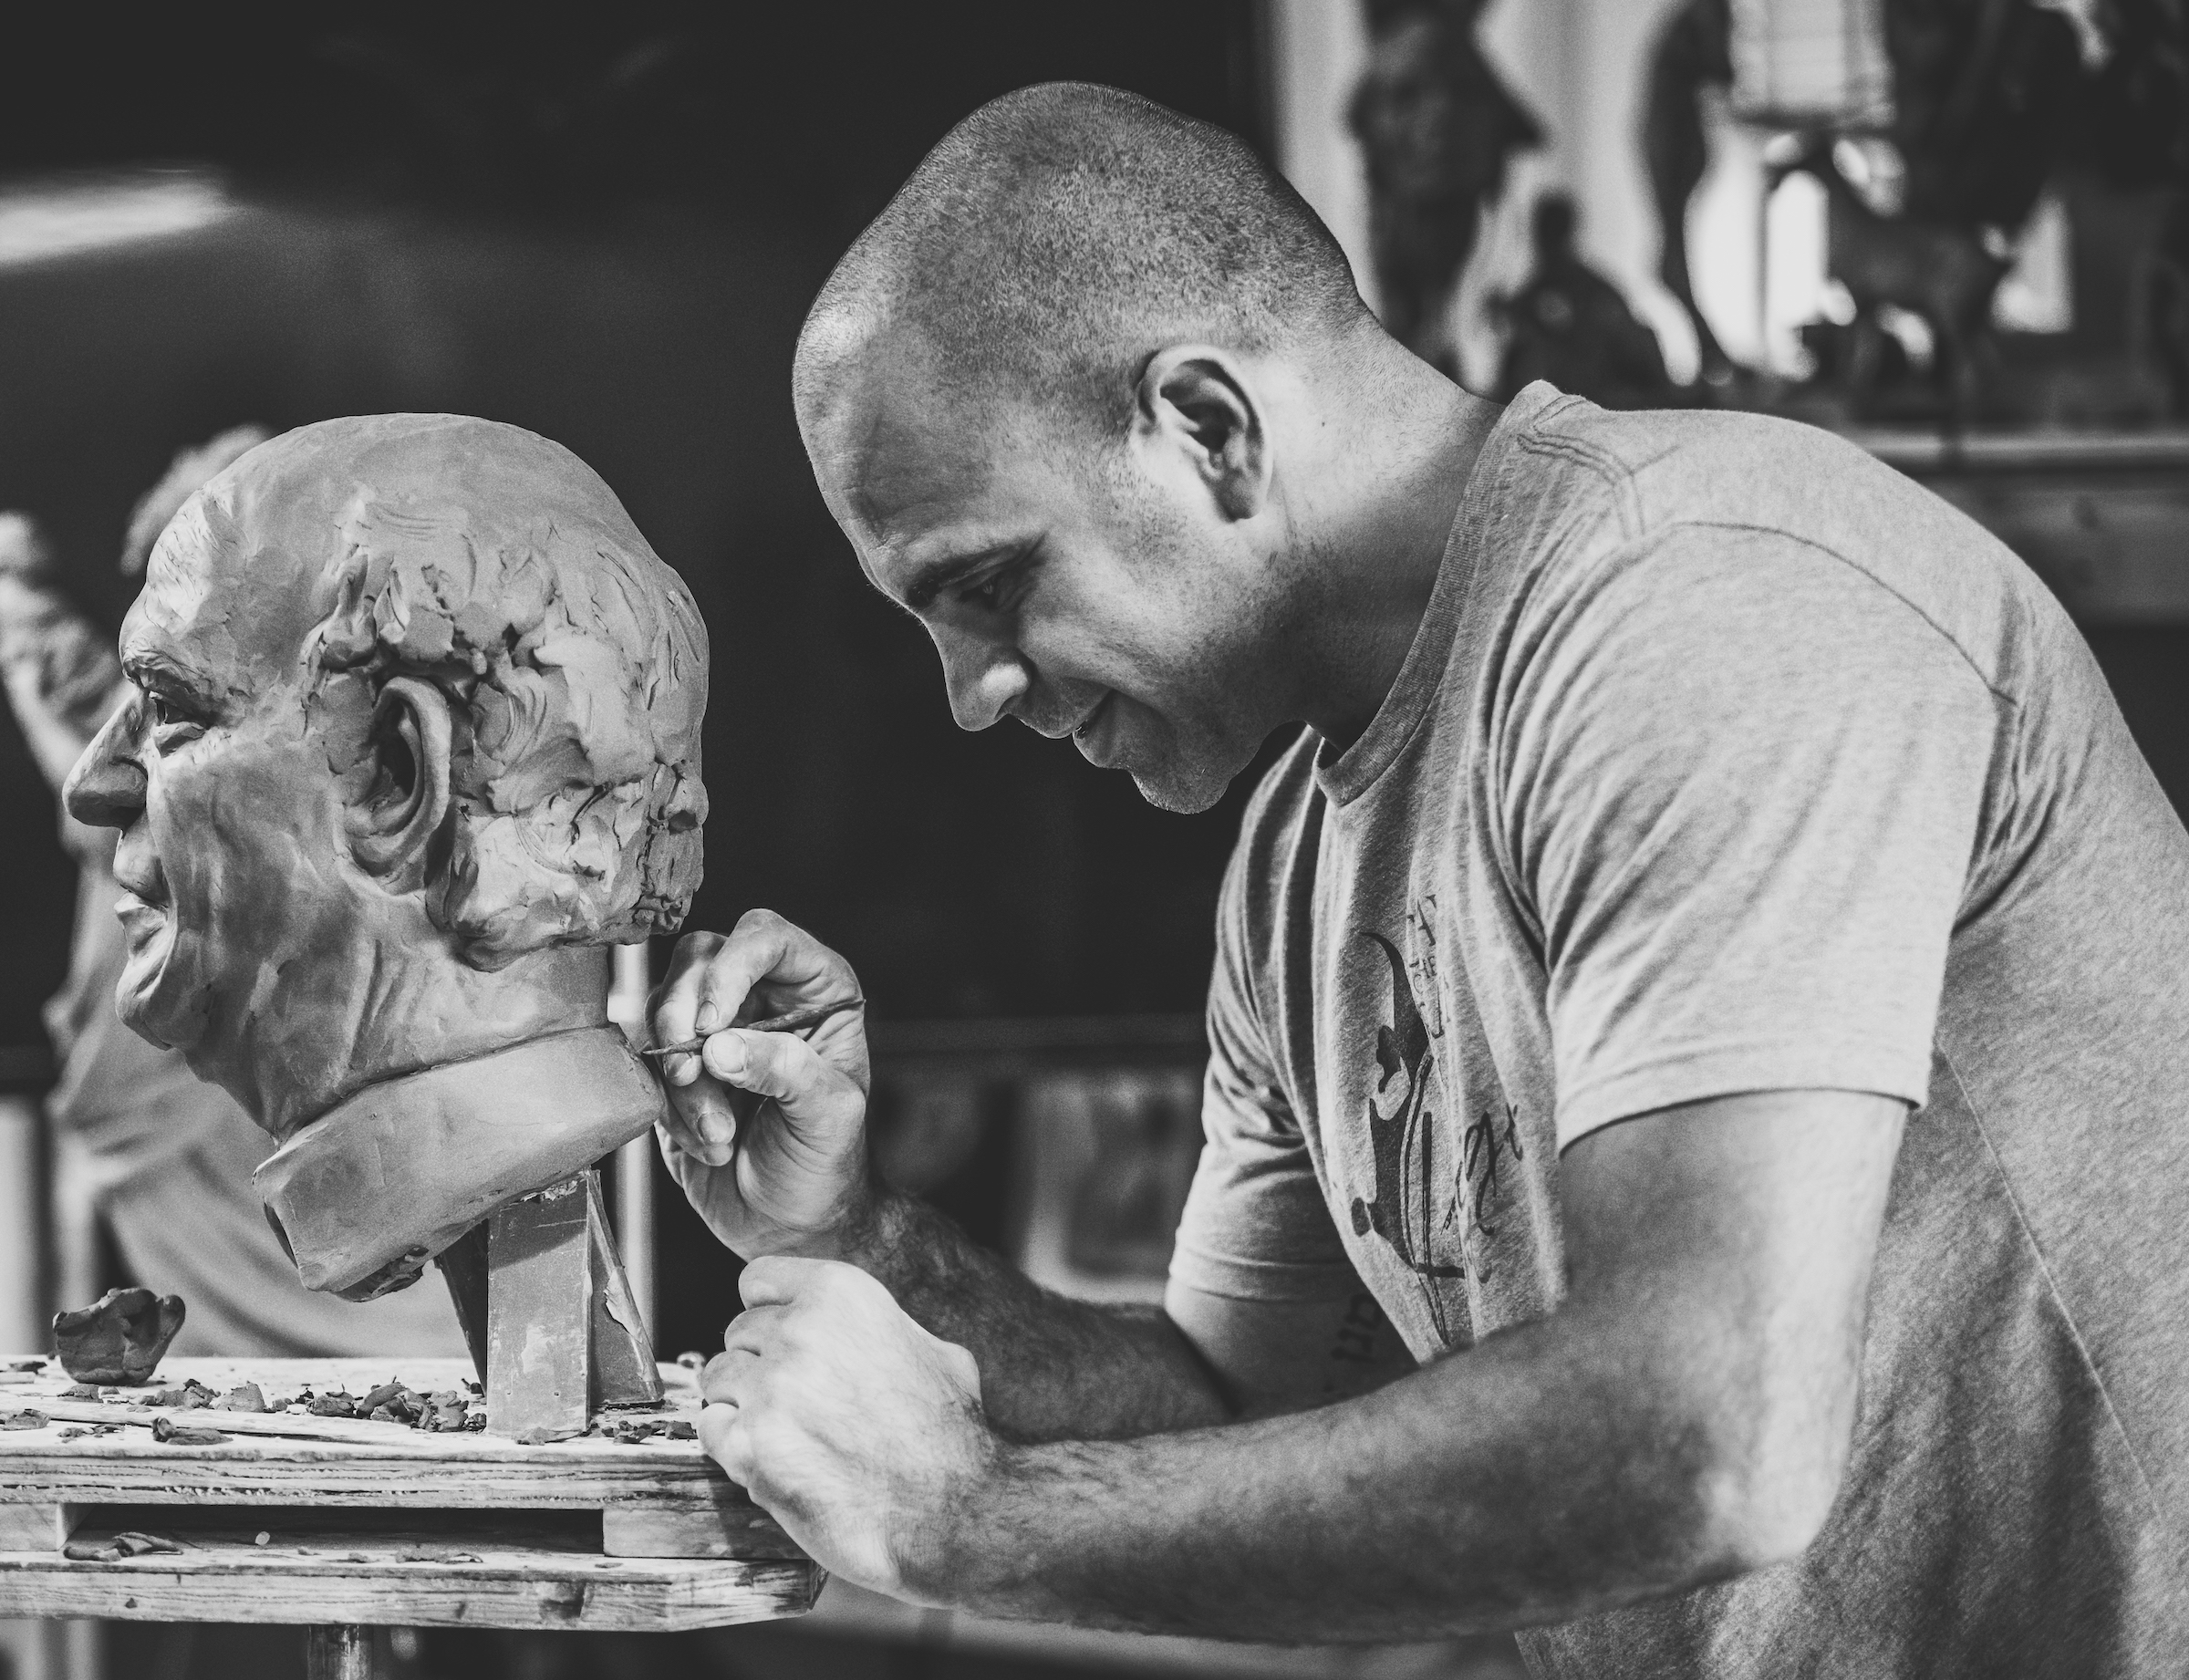 Rodrigo sculpting his father, Arnaldo Artilheiro